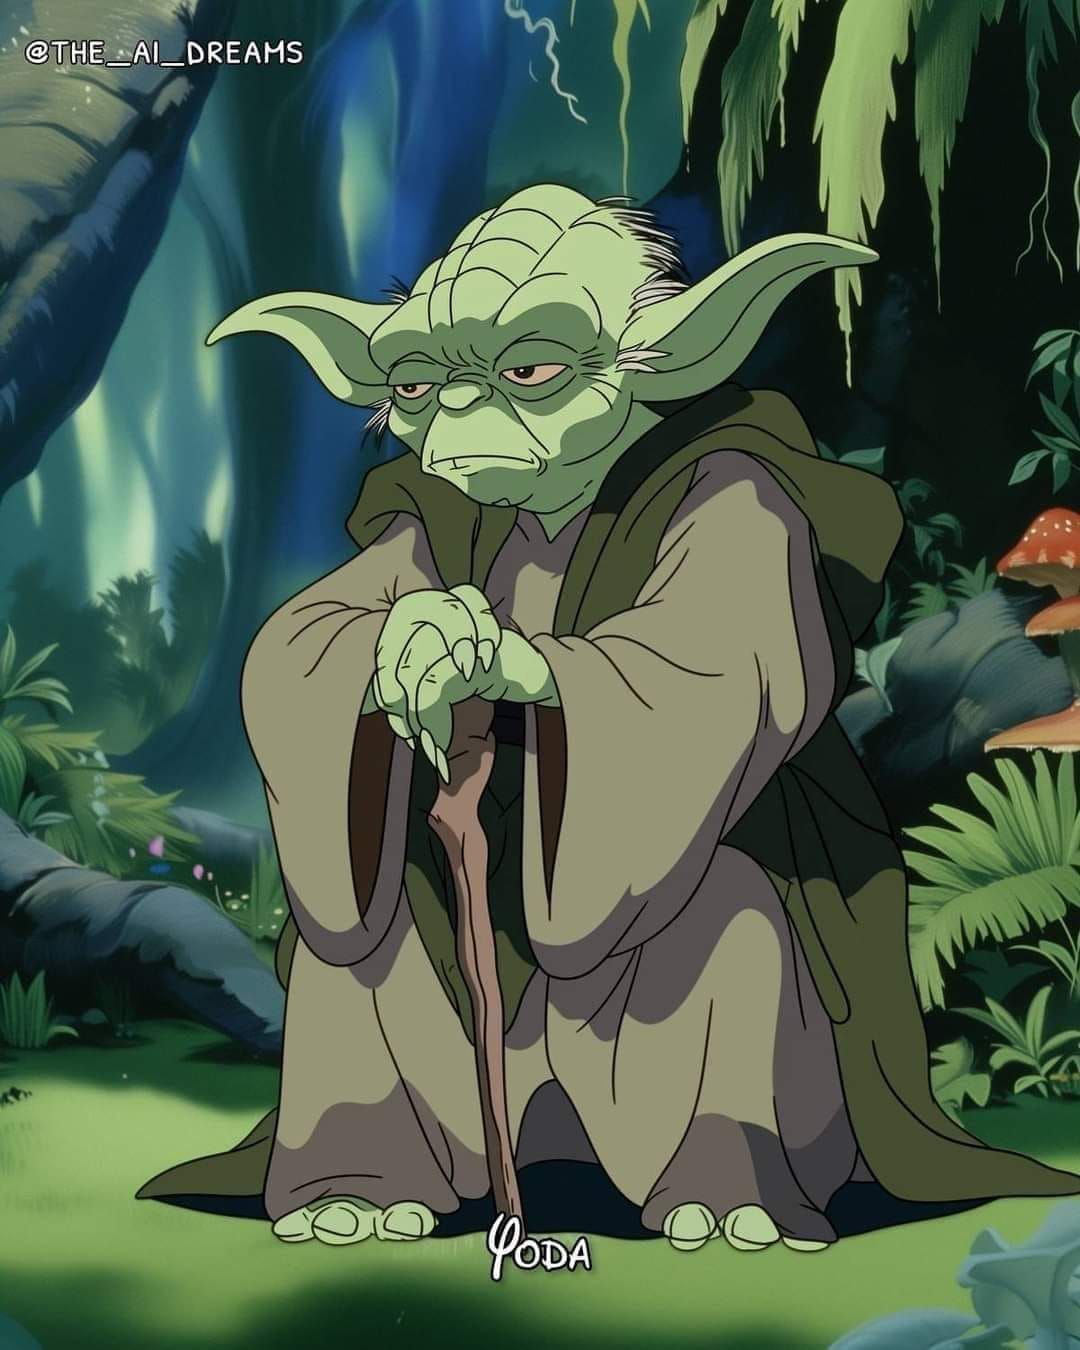 Yoda de Star Wars en versión Disney según una IA